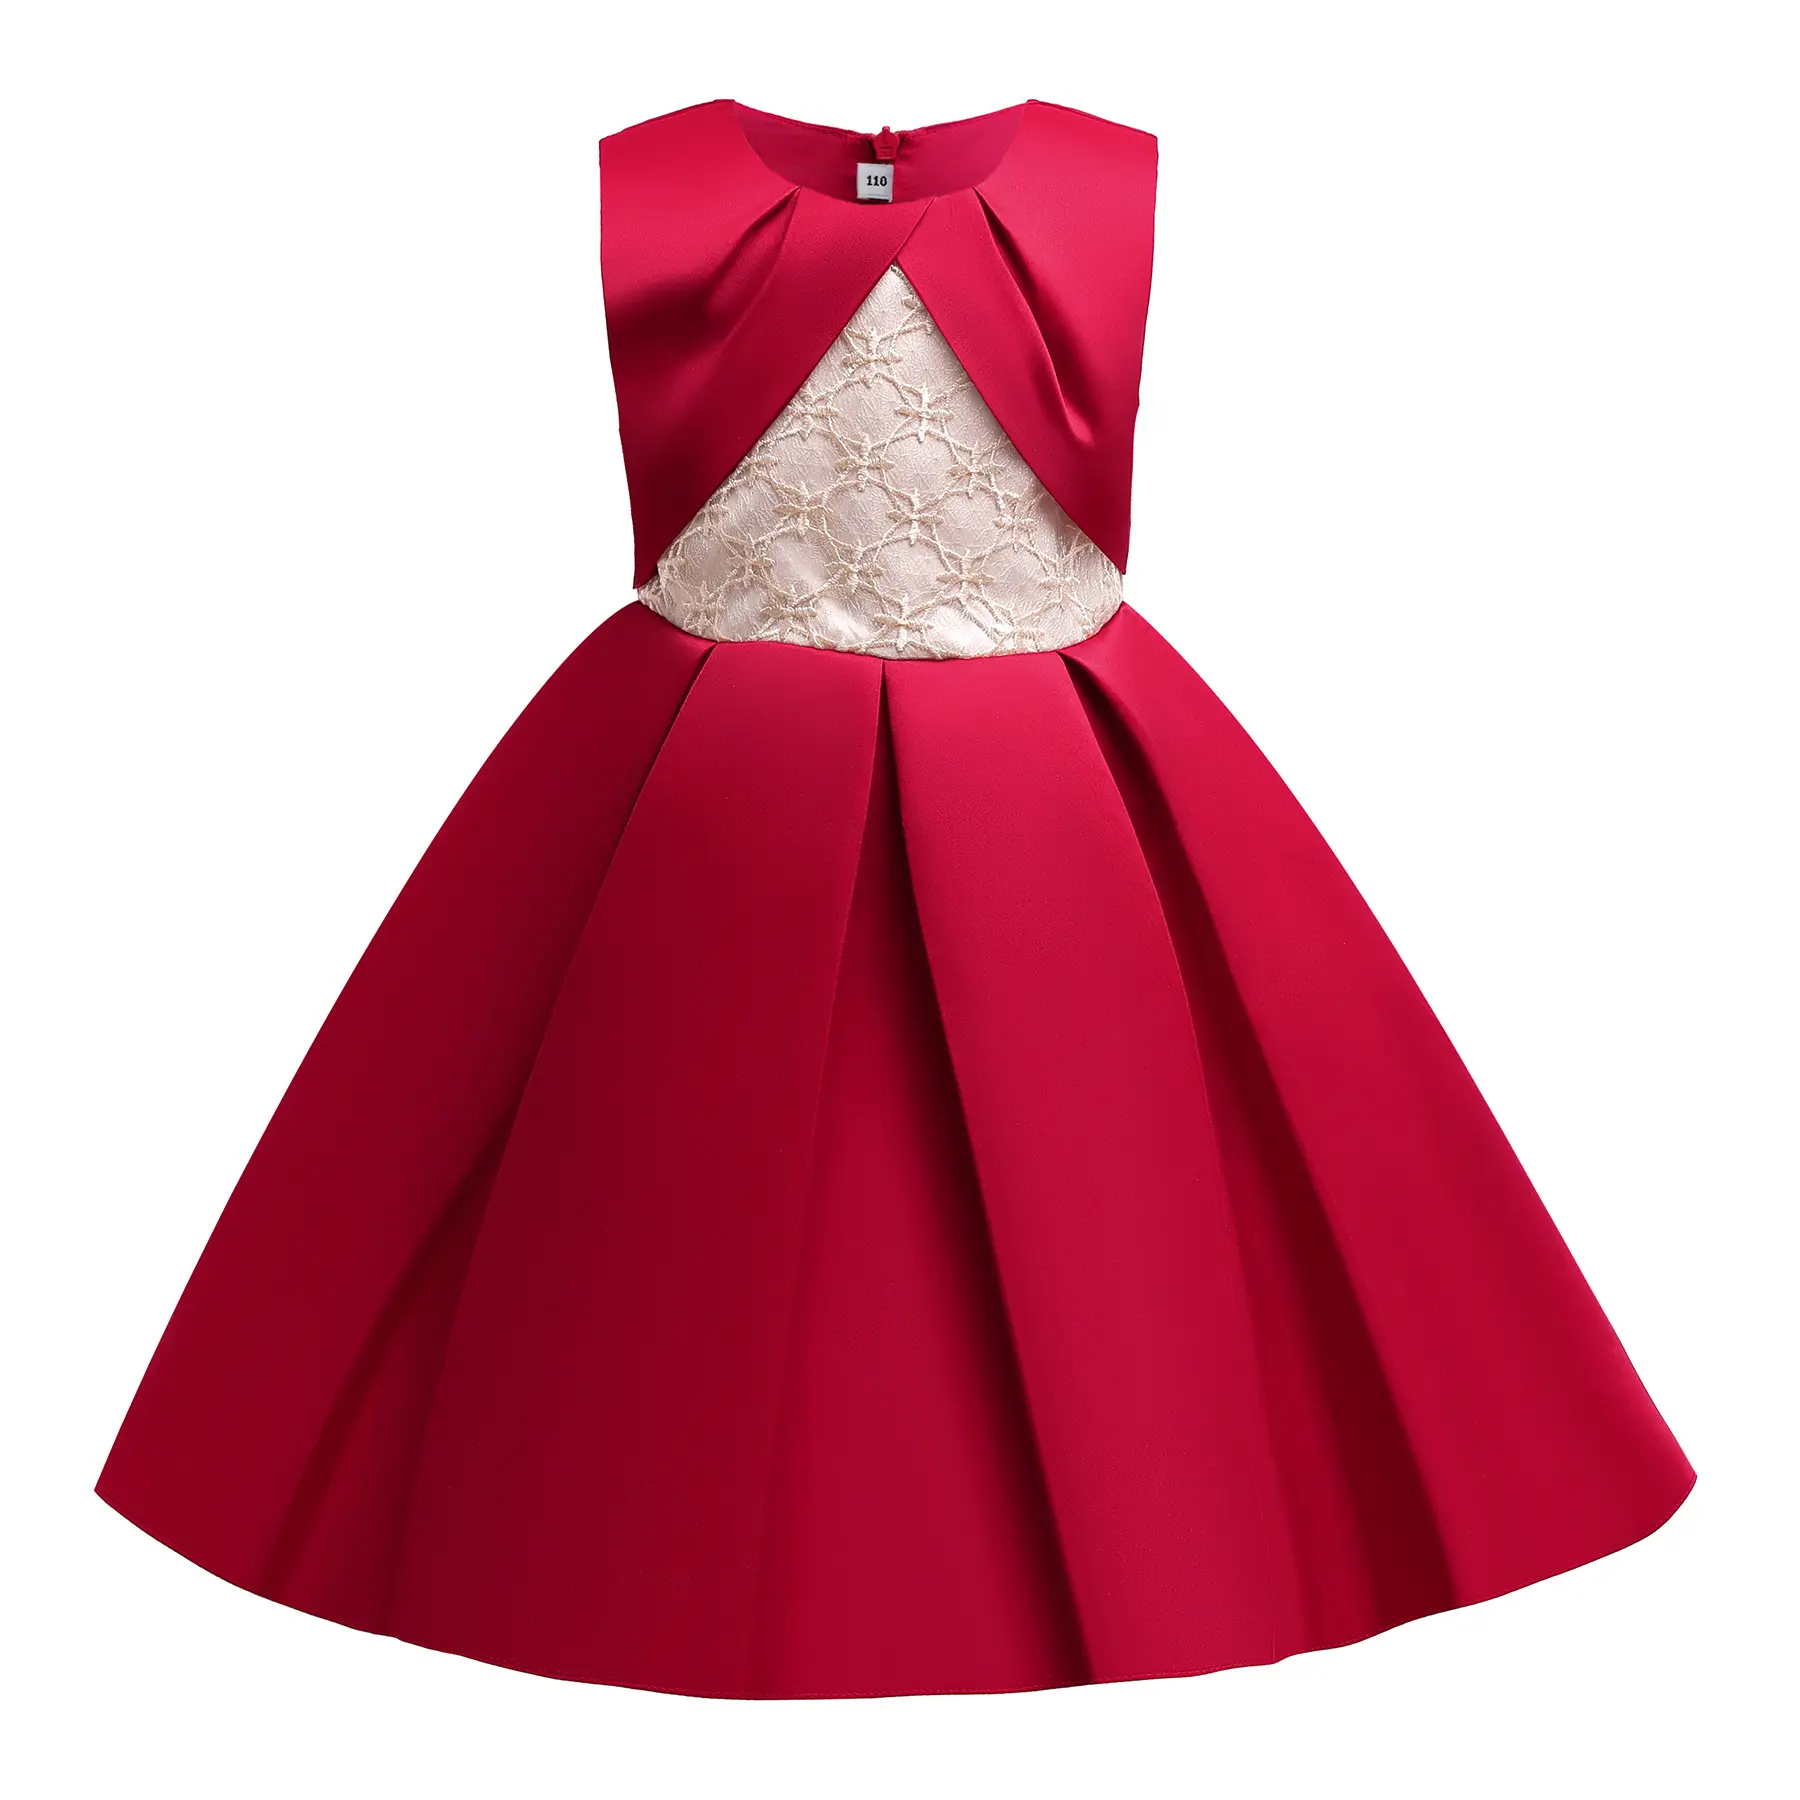 Gaun Princess Anak Perempuan, Gaun Pesta Dansa Anak Kecil 3-9 Tahun Warna Merah untuk Anak Perempuan